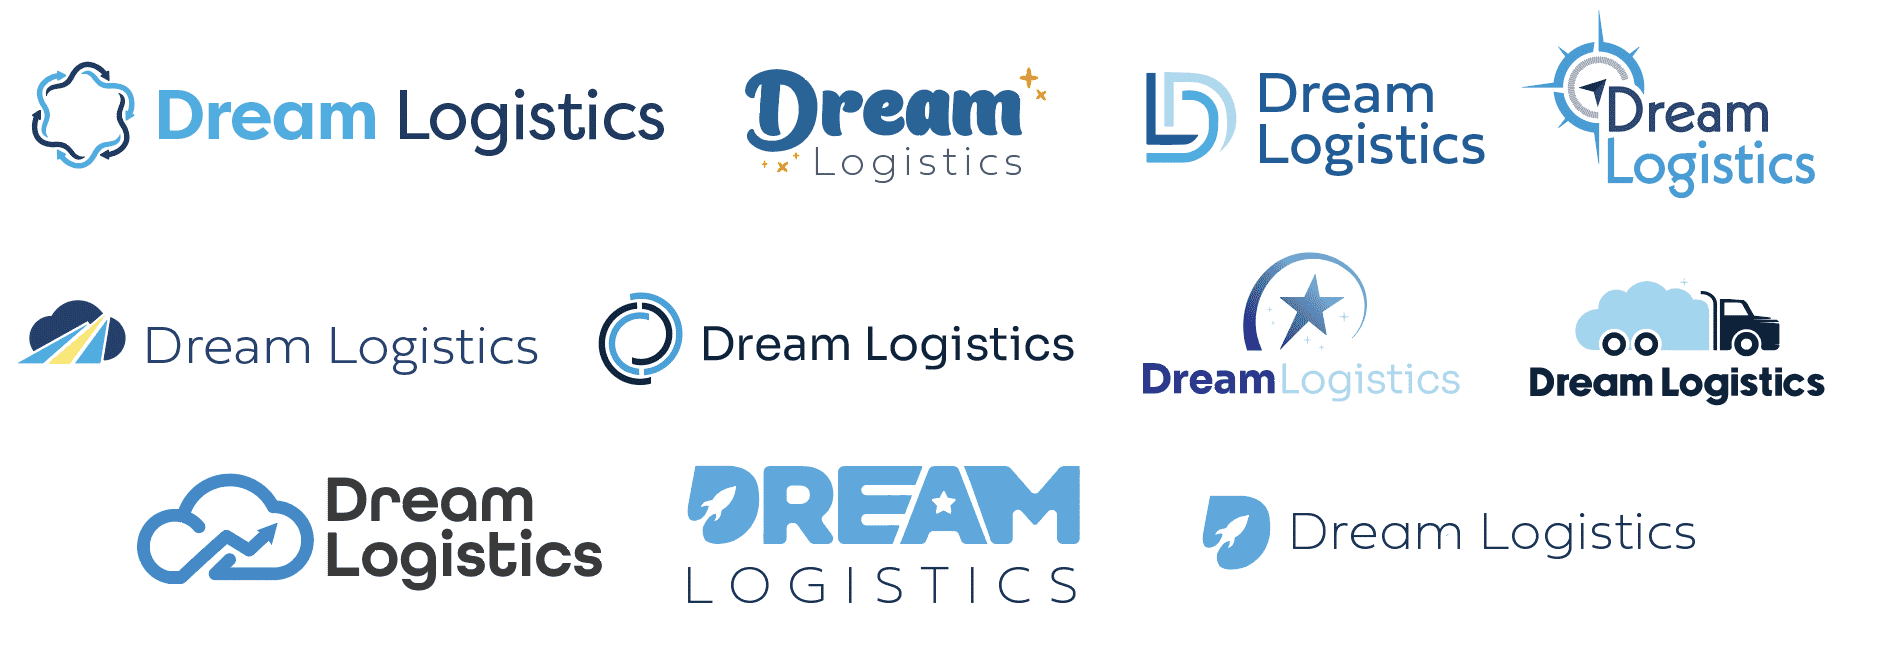 Dream Logistics Logos